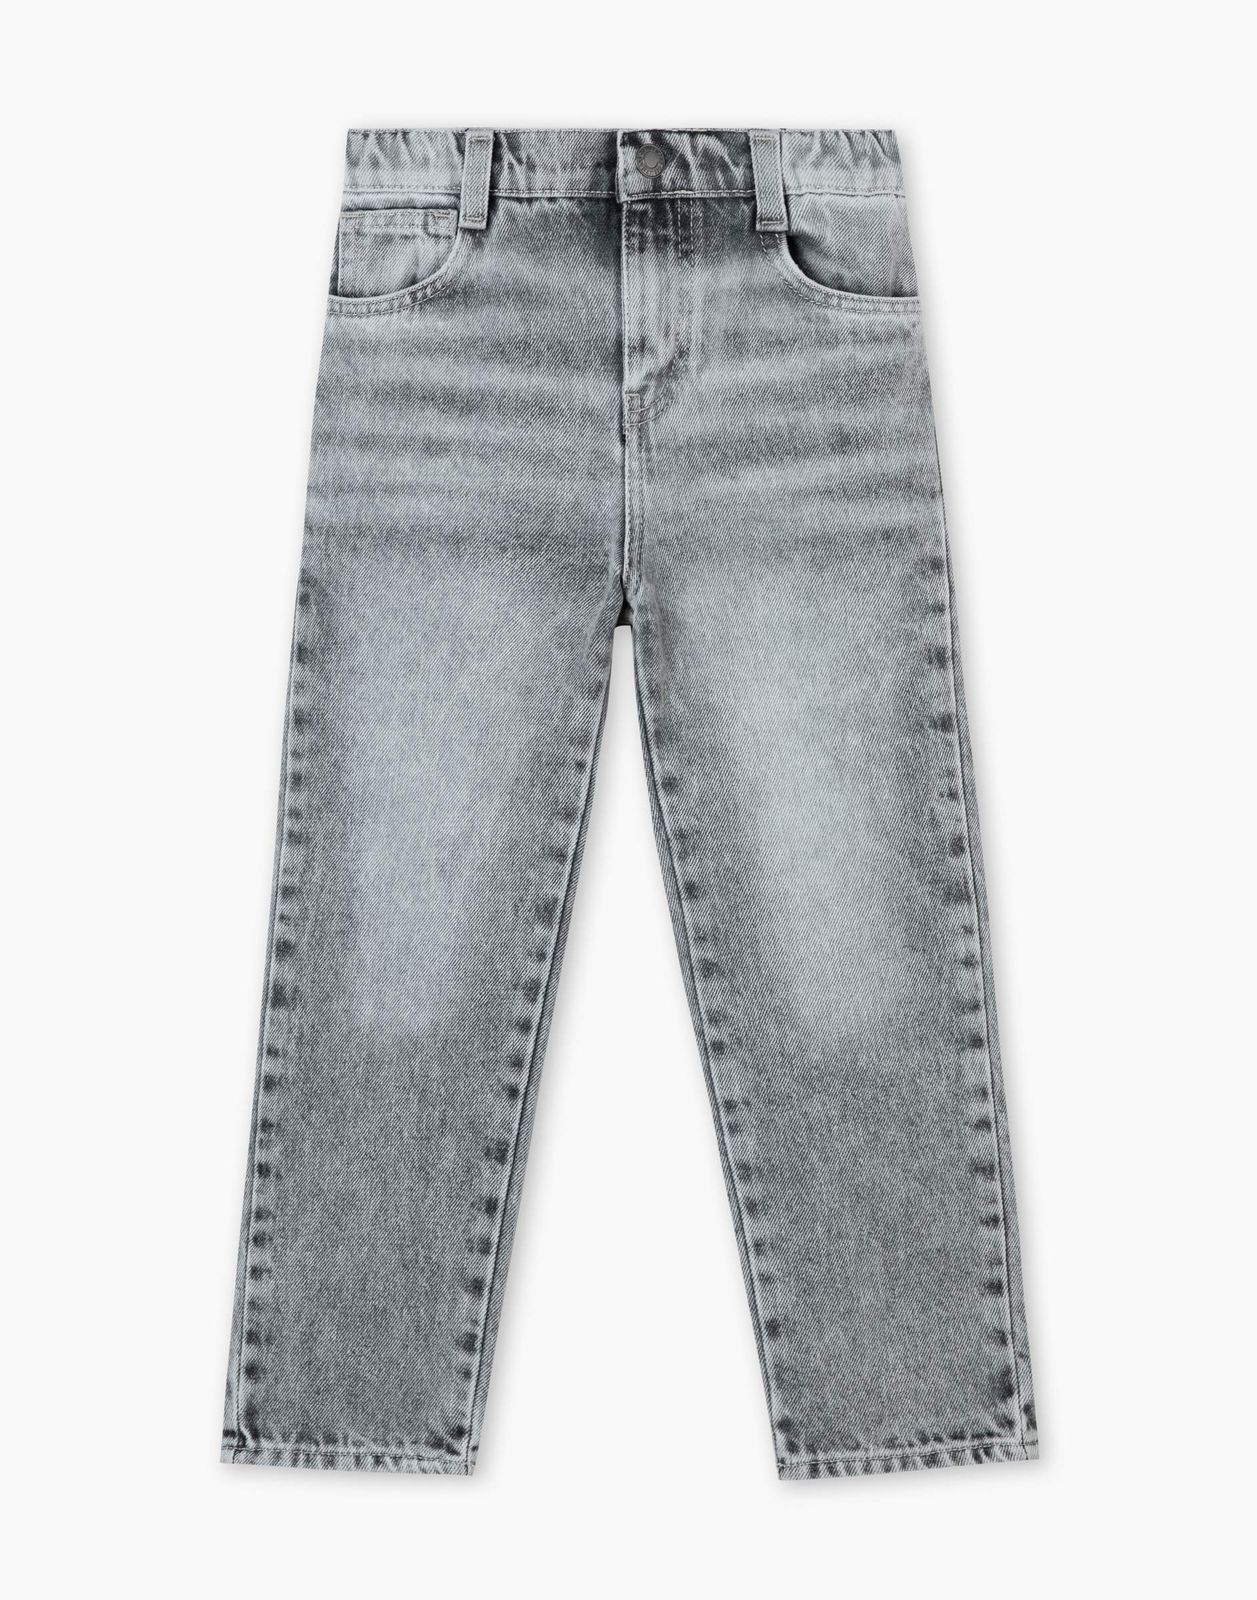 Джинсы детские Gloria Jeans BJN015300, серый/серый-лайтайс/, 104